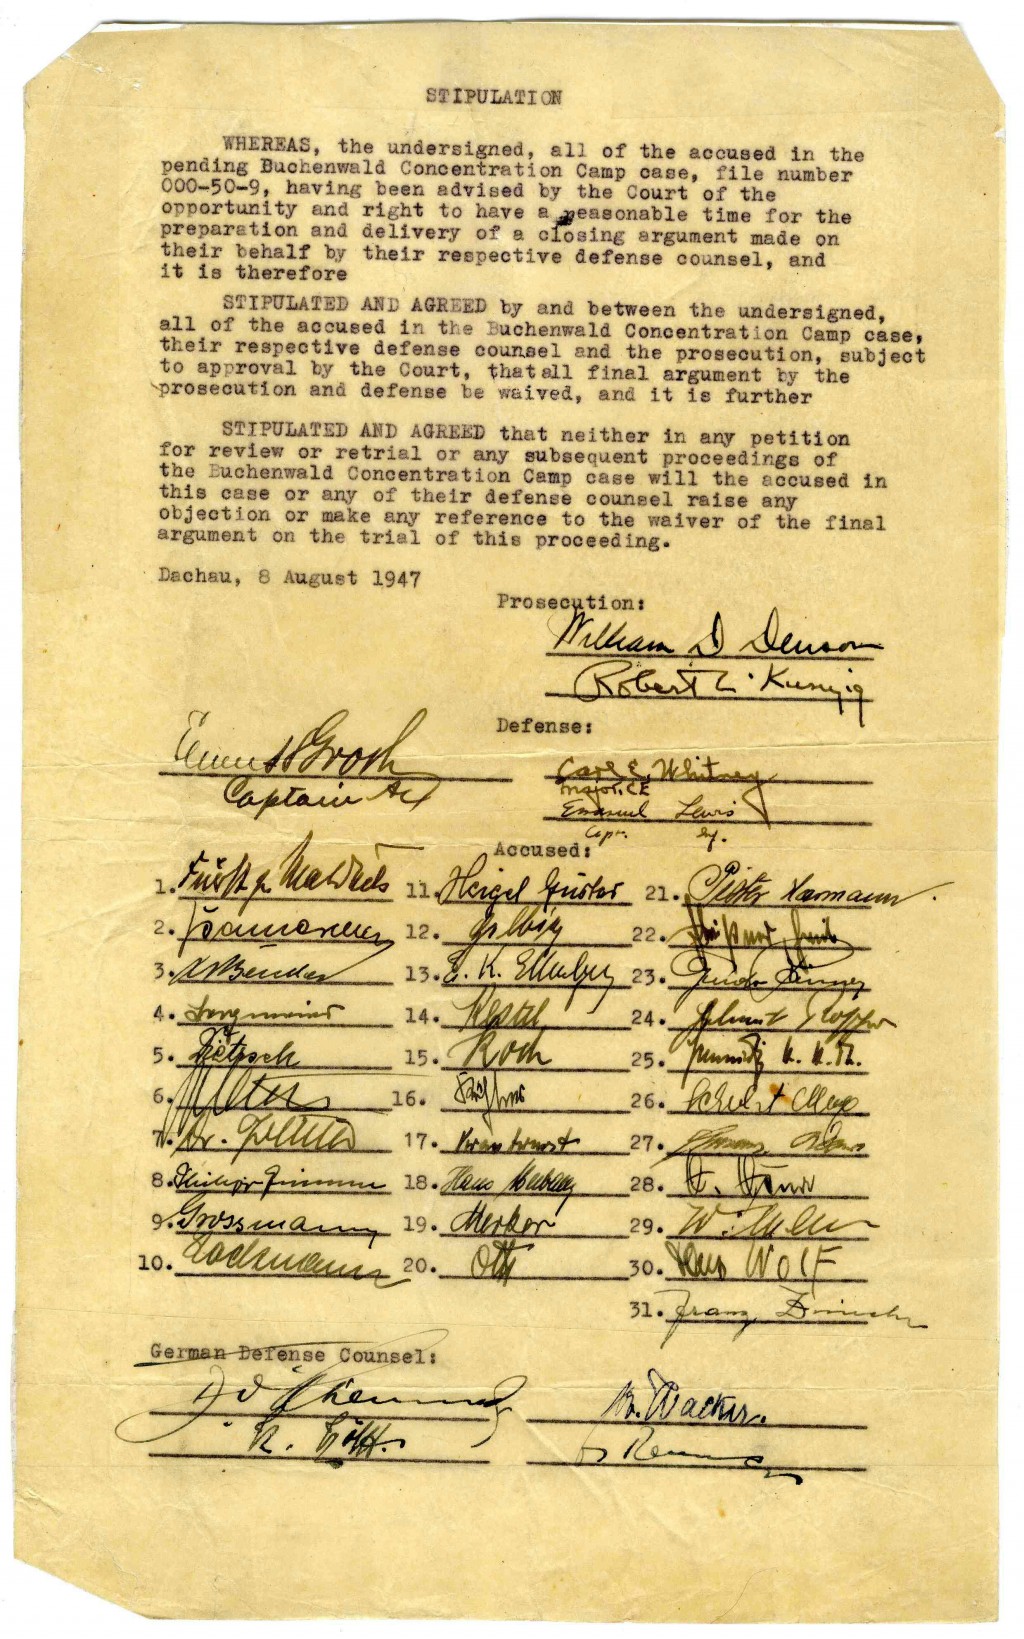 Buchenwald trial document [LCID: 20057gq1]